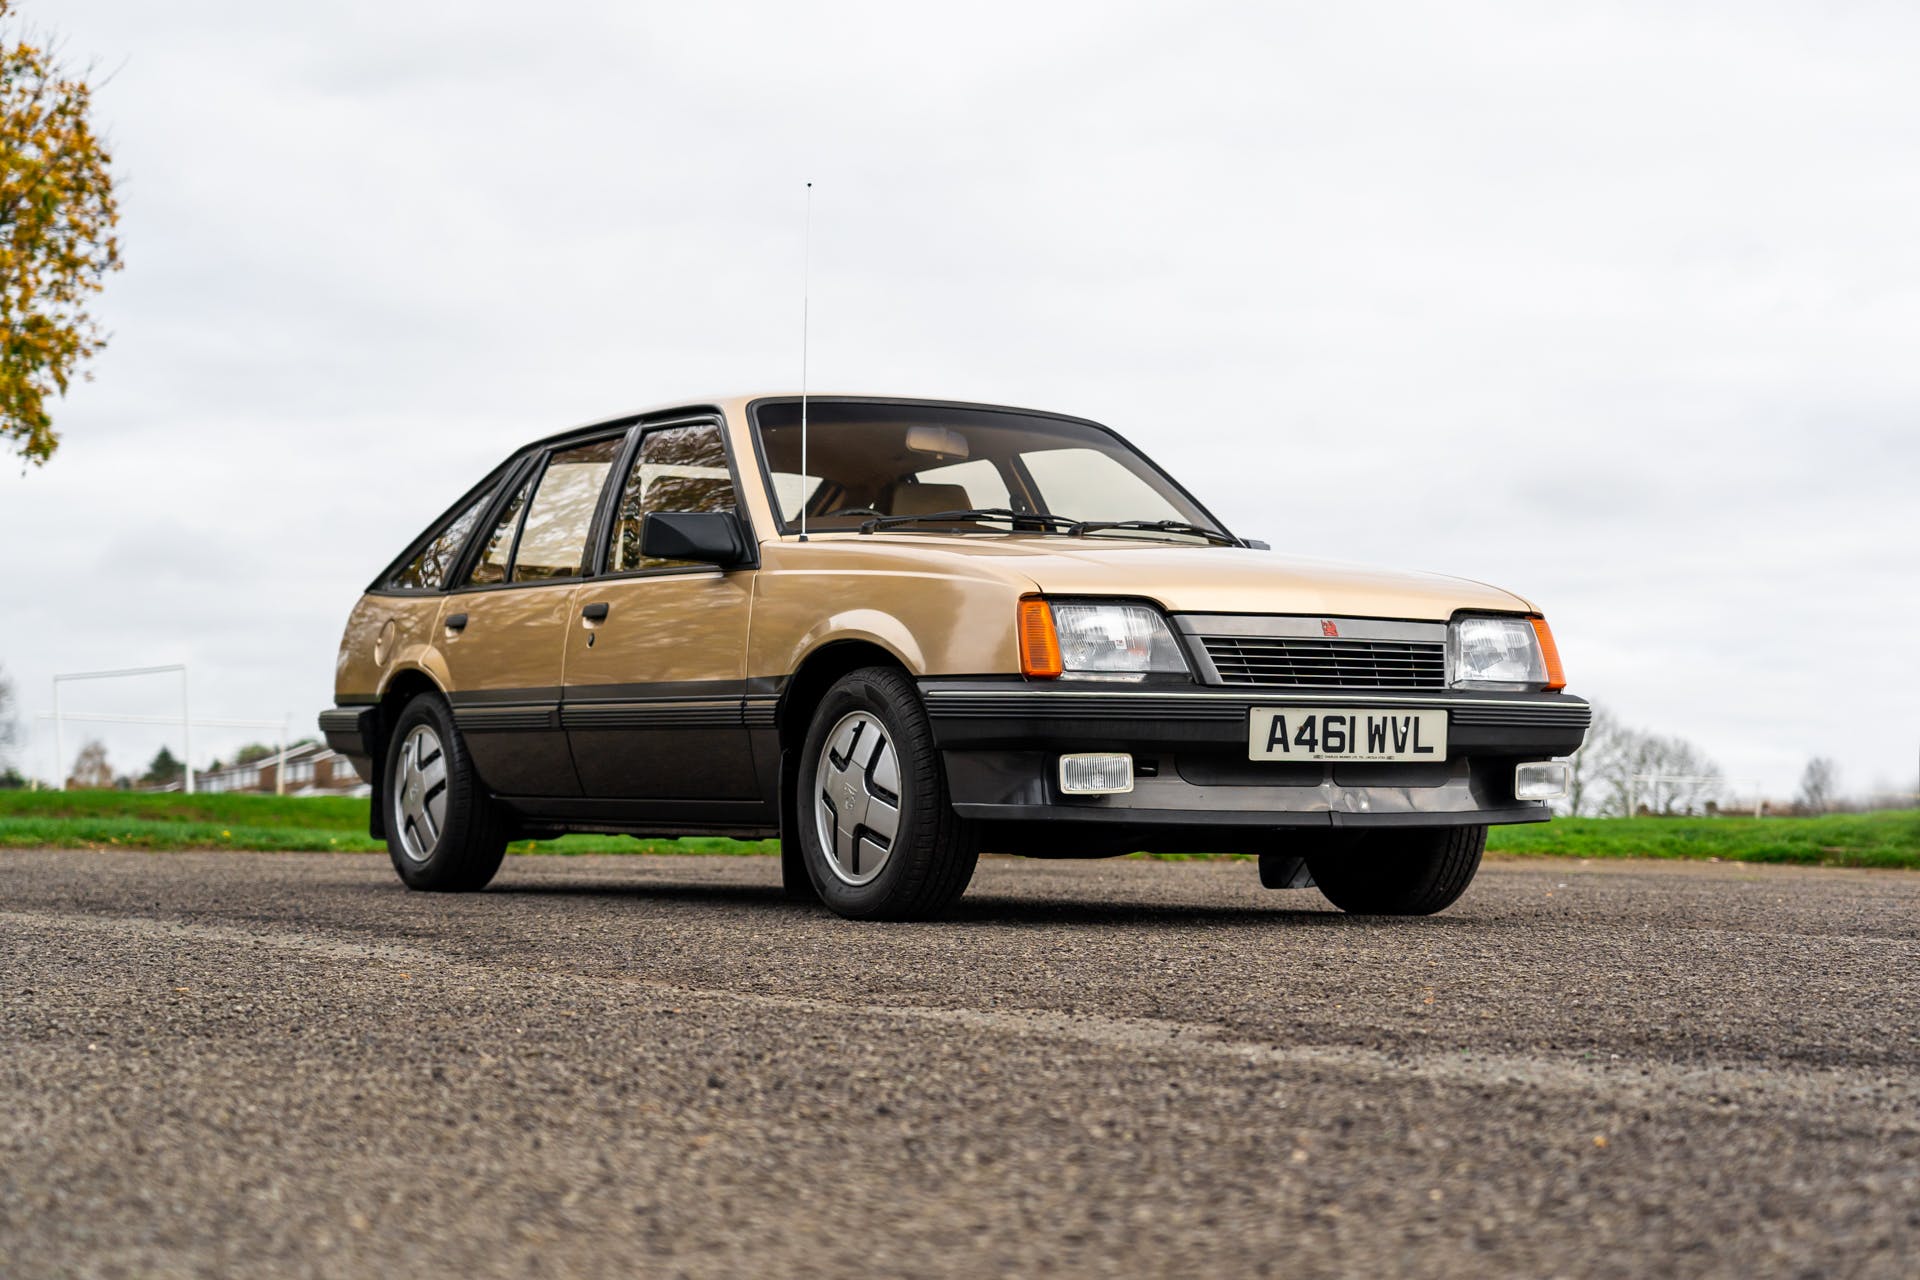 White Gold: The Vauxhall Cavalier SRi was 'a damn good car'